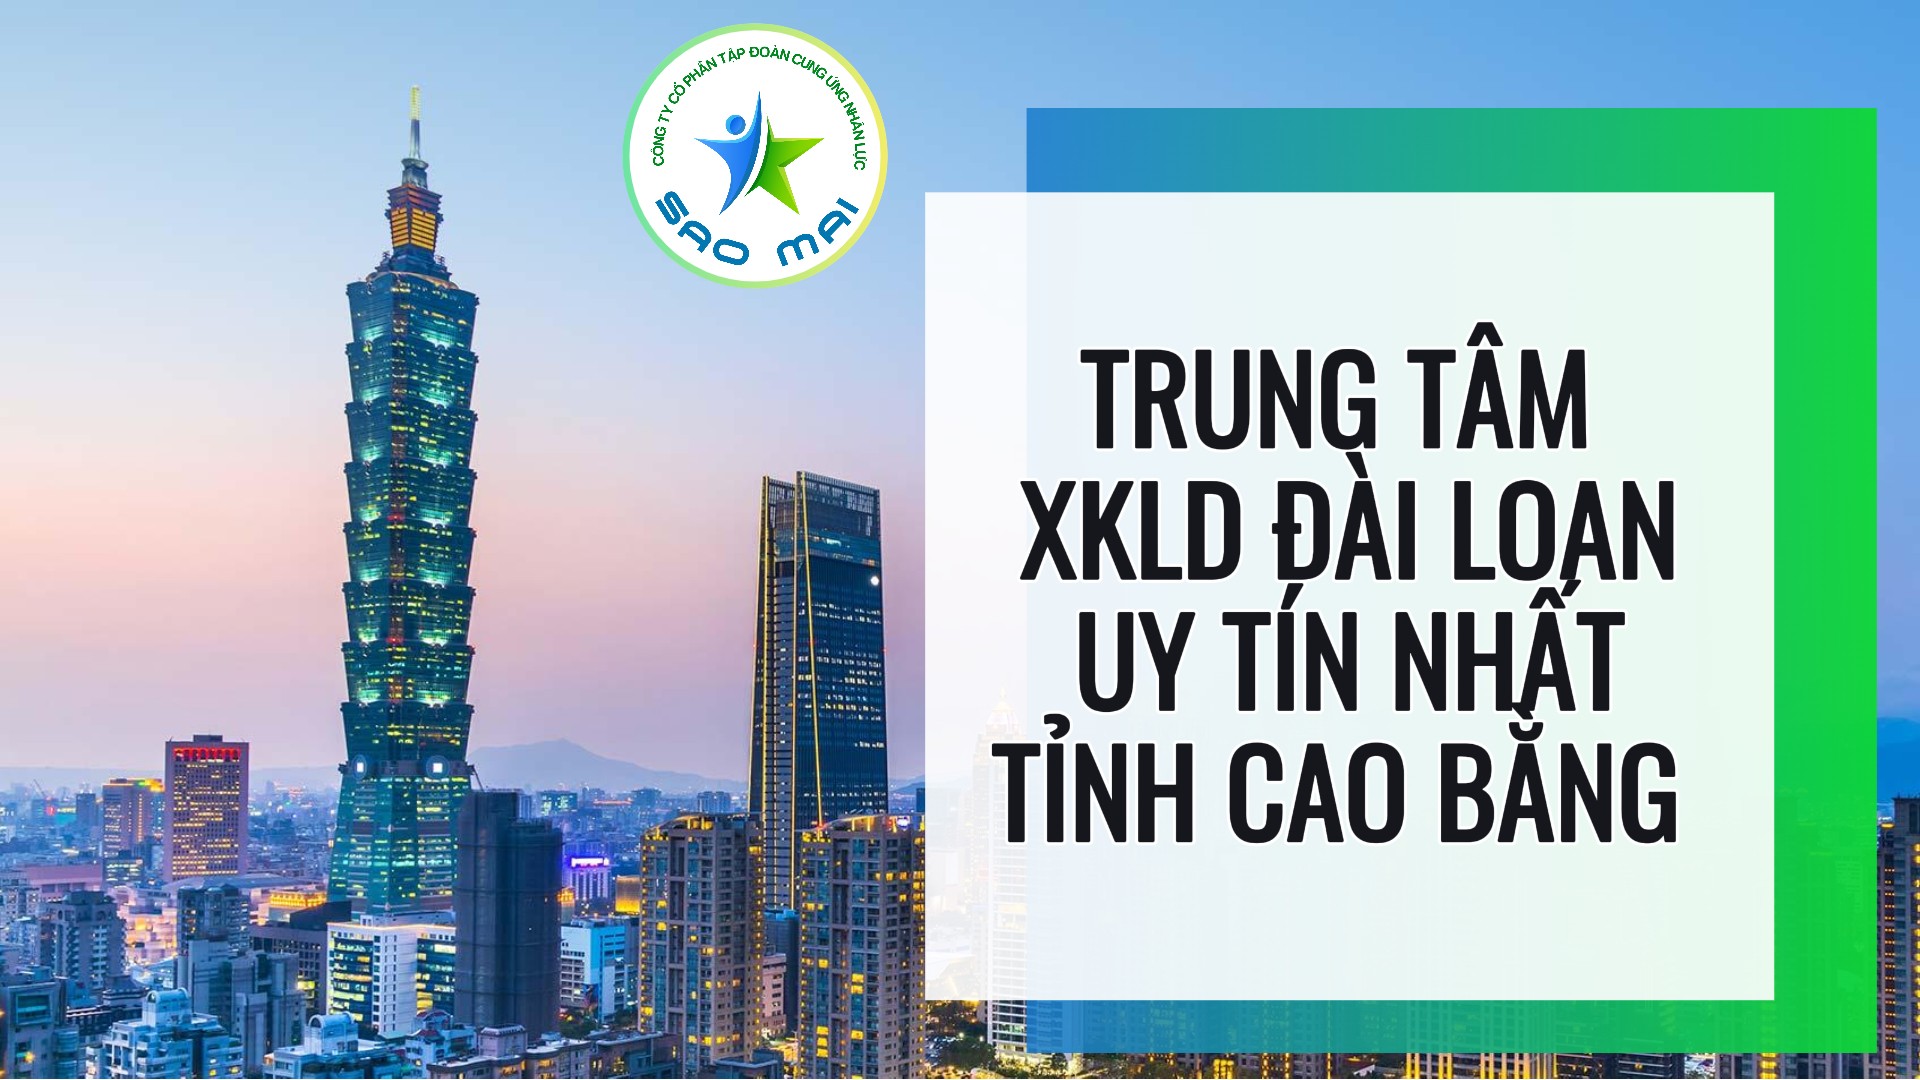 Trung tâm xuất khẩu lao động Đài Loan uy tín với chi phí thấp và bay nhanh tại tỉnh Cao Bằng